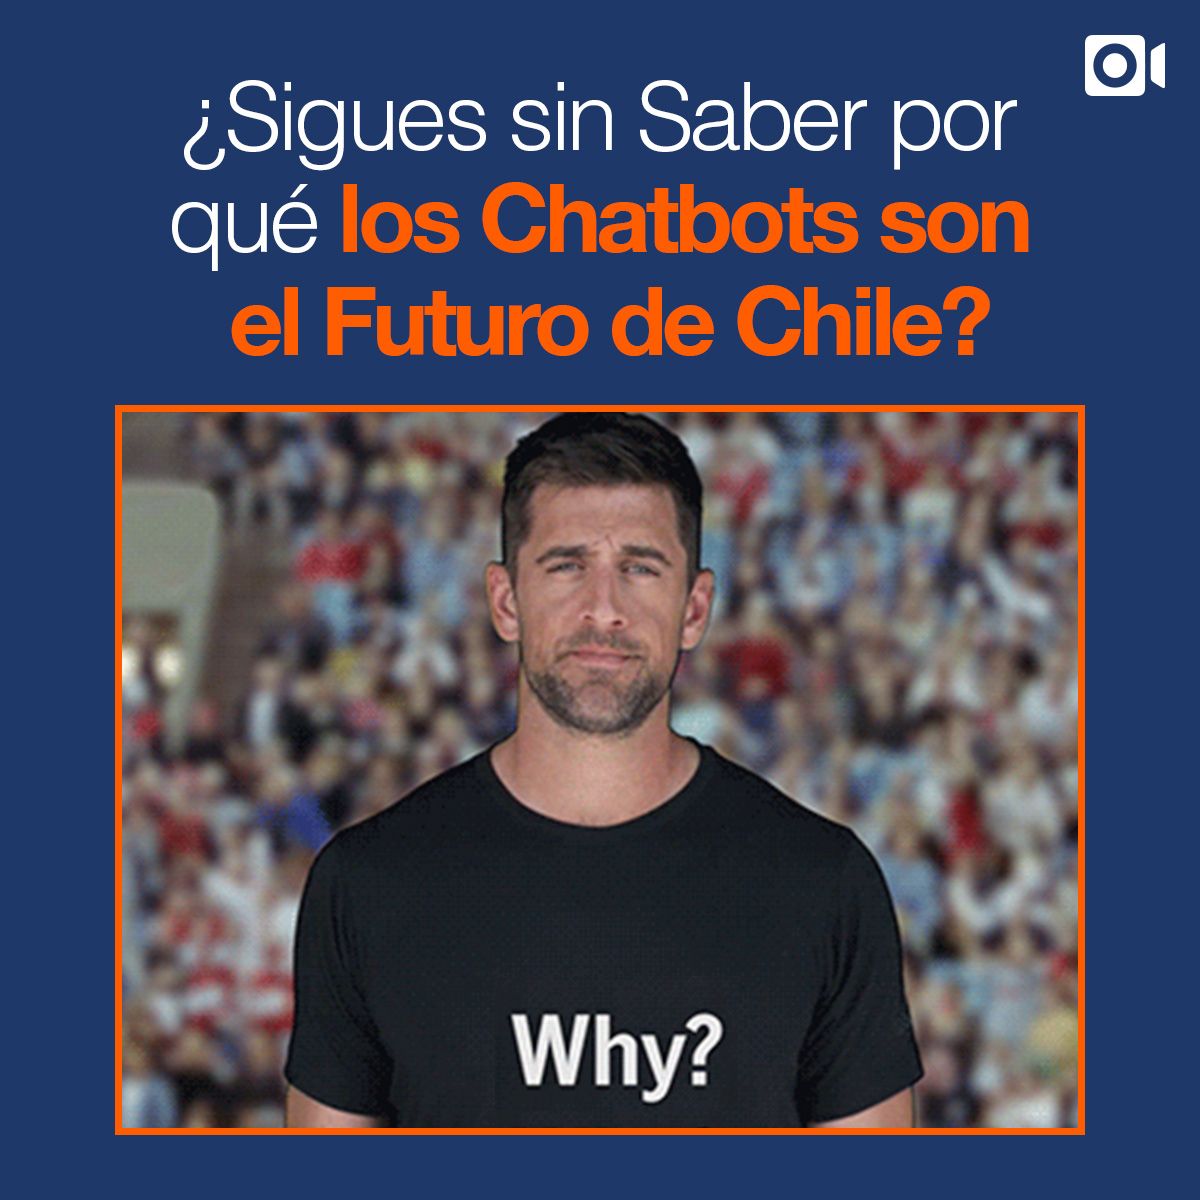 Sigues sin Saber por qué los Chatbots son el Futuro de Chile?